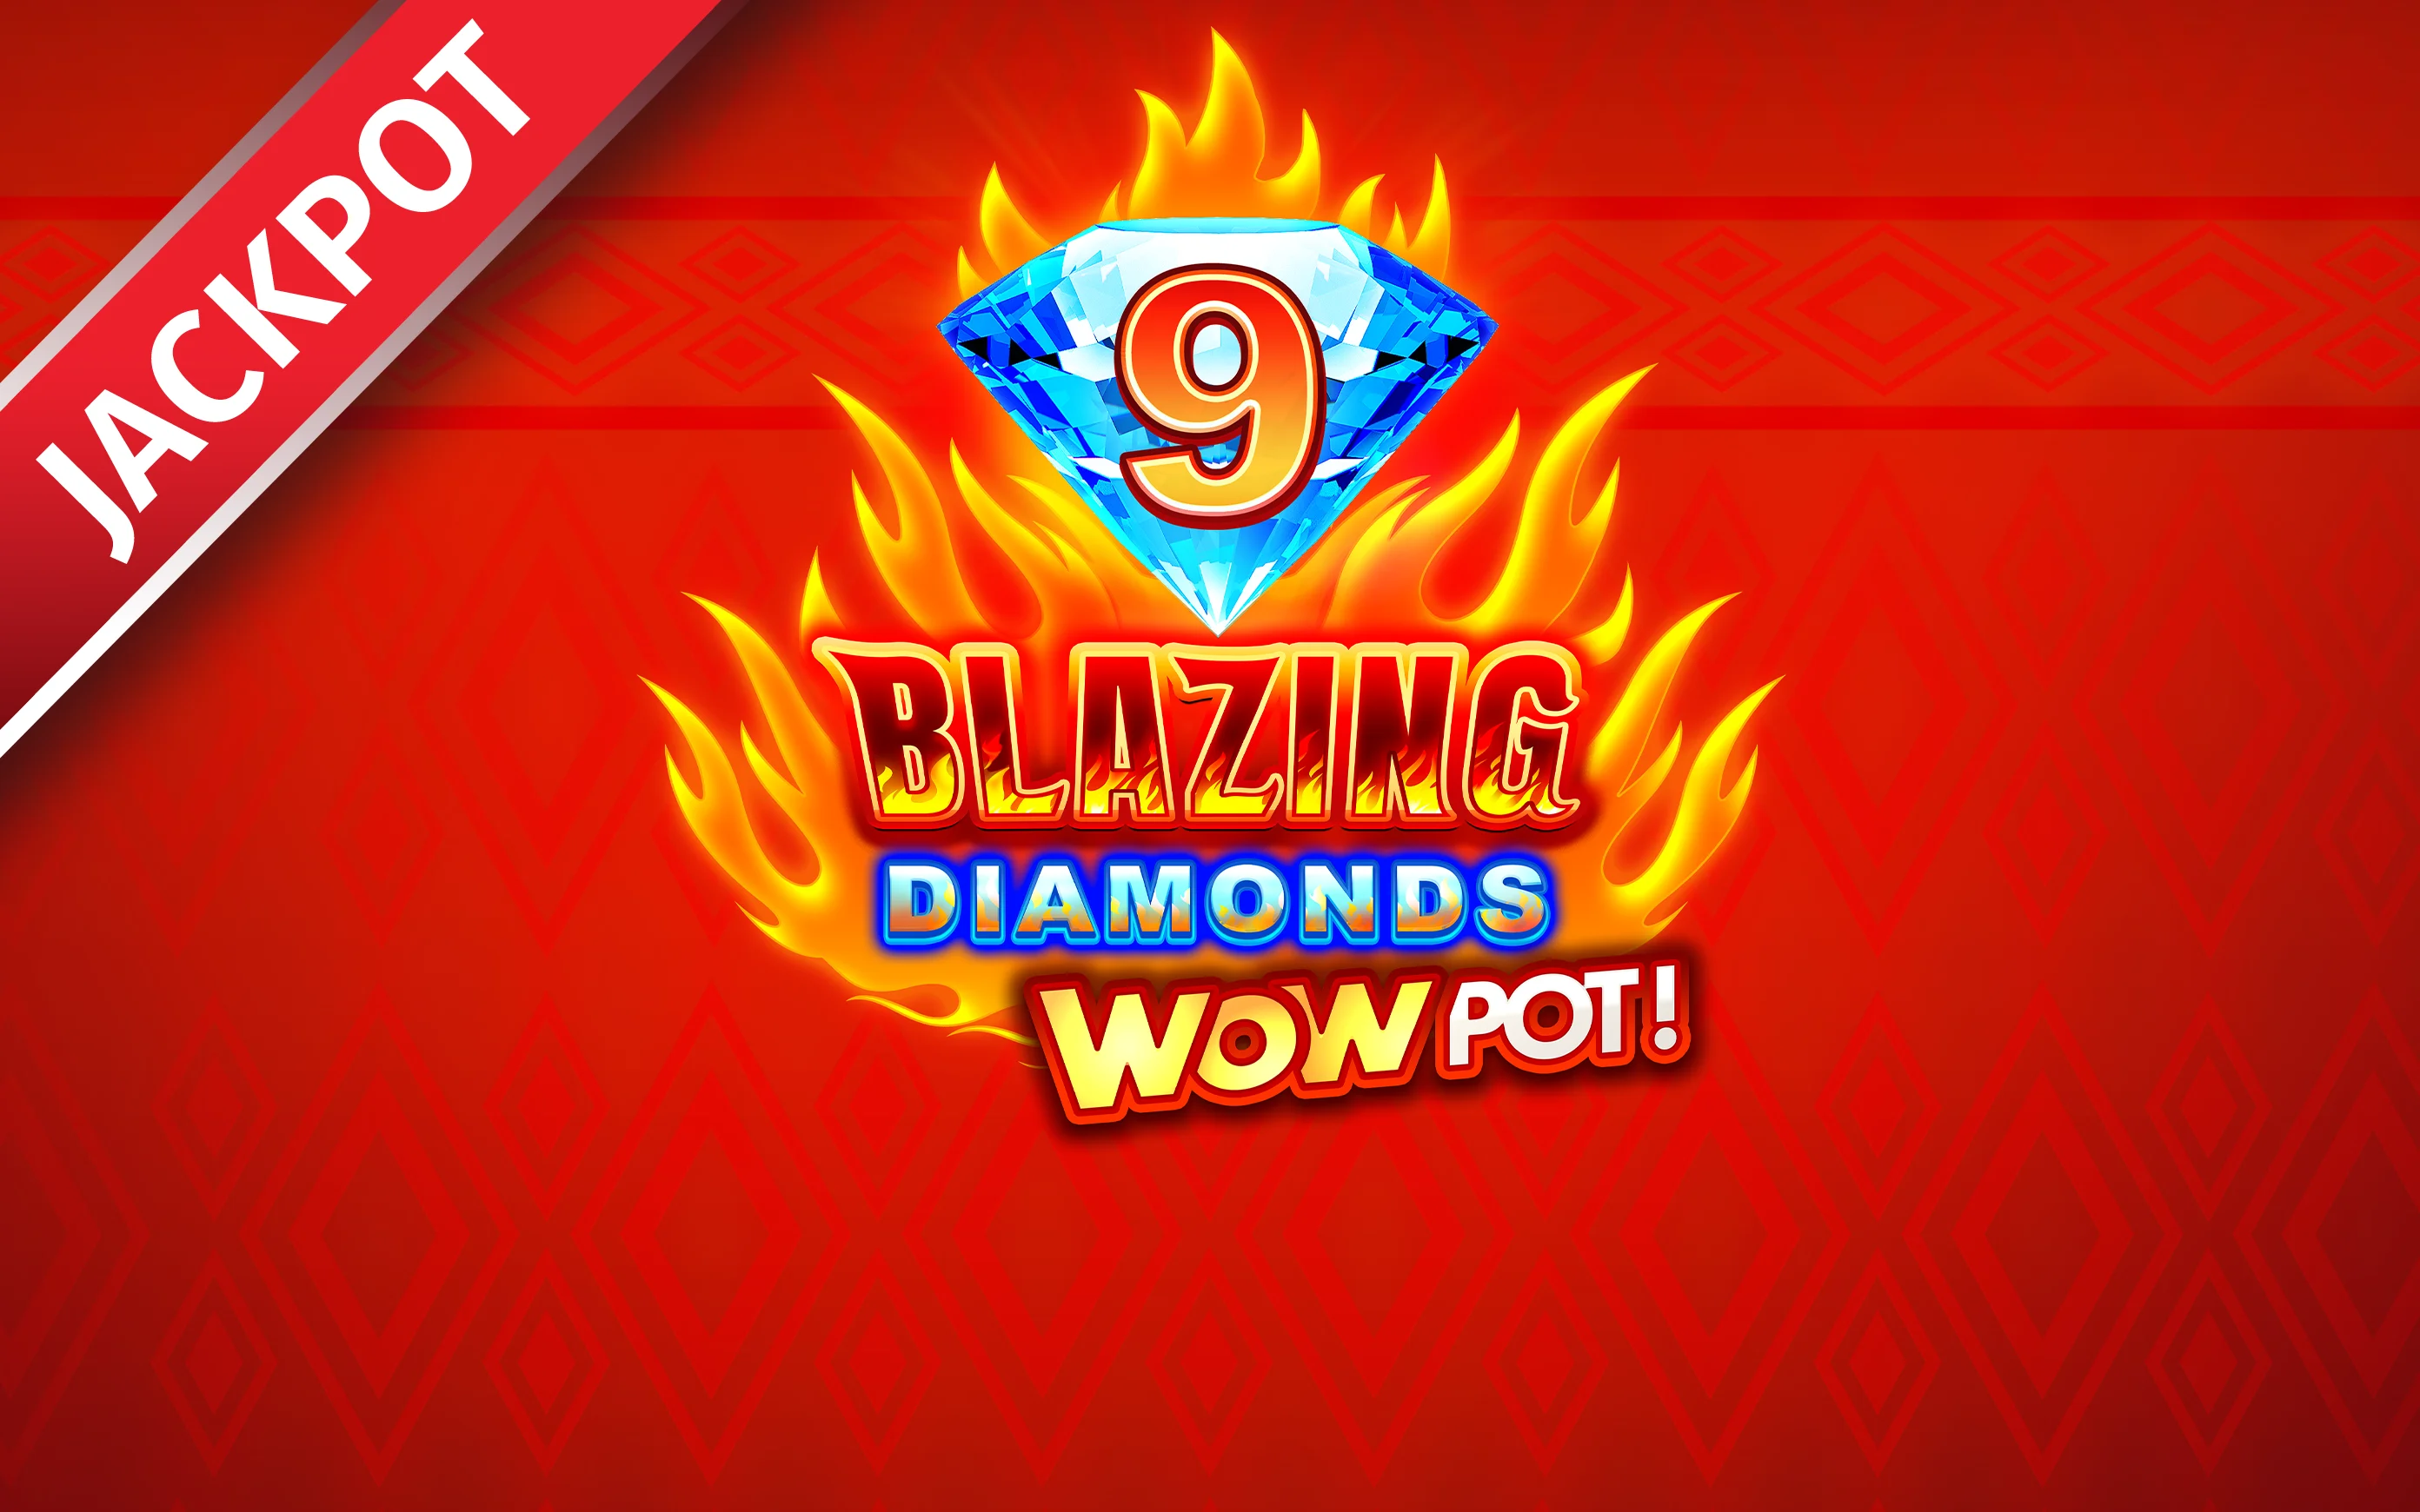 Play 9 Blazing Diamonds WOWPOT on Starcasino.be online casino